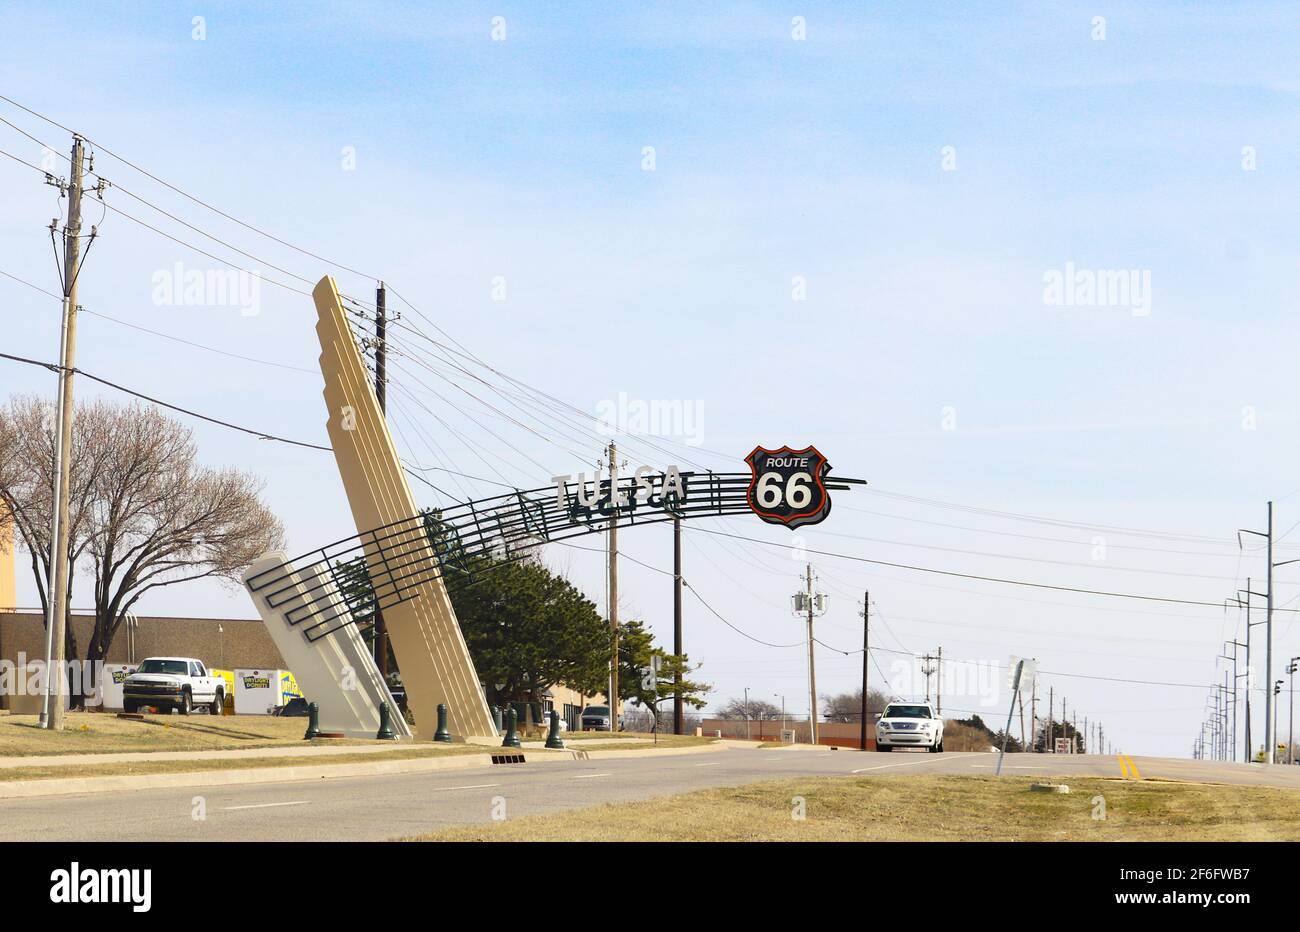 Panneau Art Deco route 66 qui s'étend sur l'autoroute par lumière du jour L'entrepôt Donut quitte la ville à l'est à Tulsa, Oklahoma ÉTATS-UNIS 3 9 2018 Banque D'Images